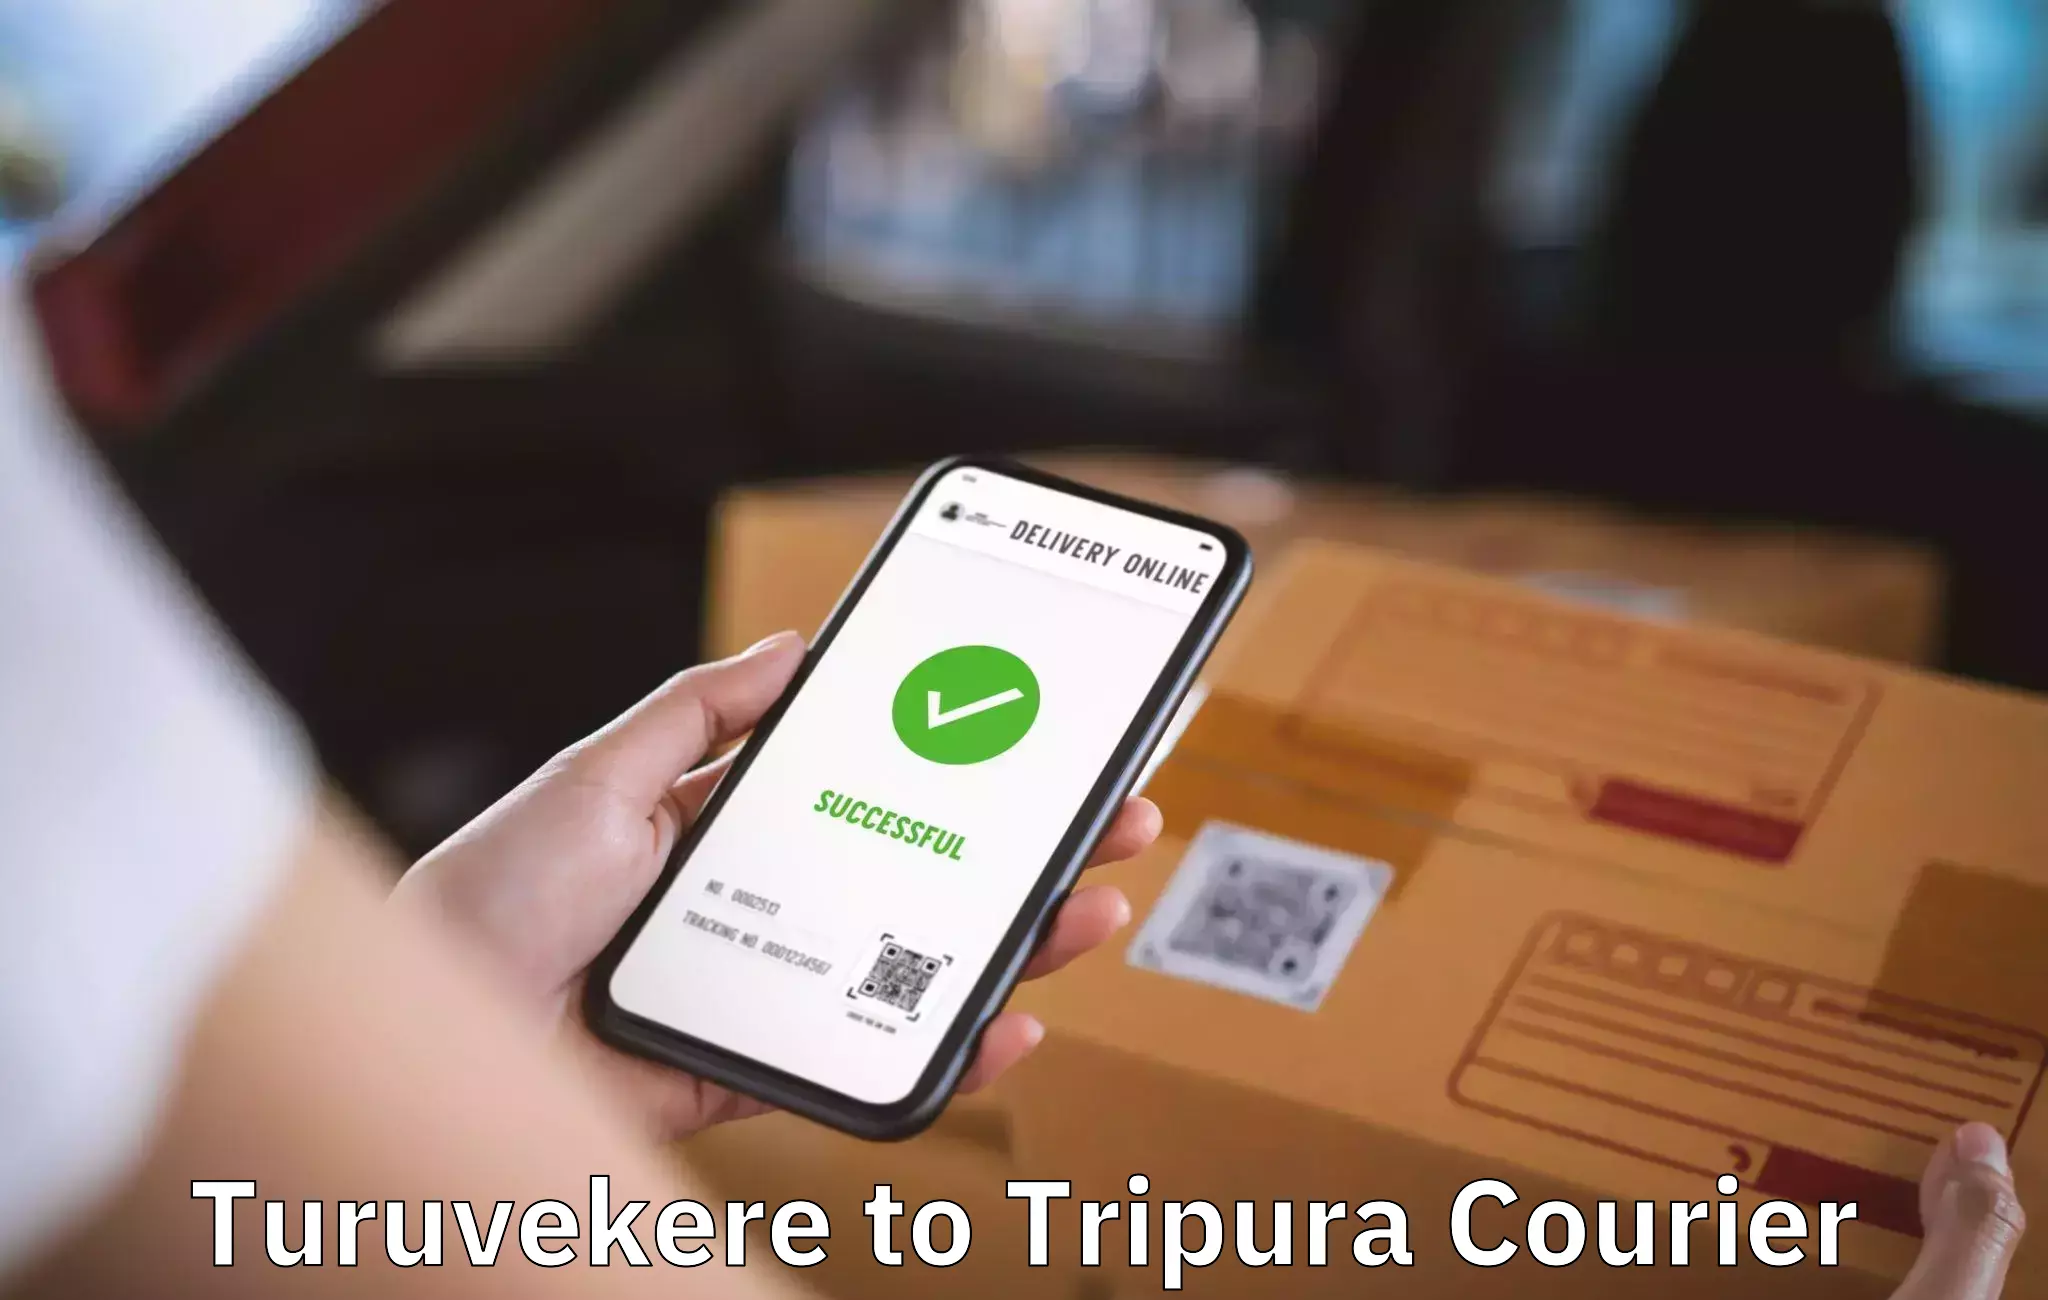 Local furniture movers Turuvekere to Tripura